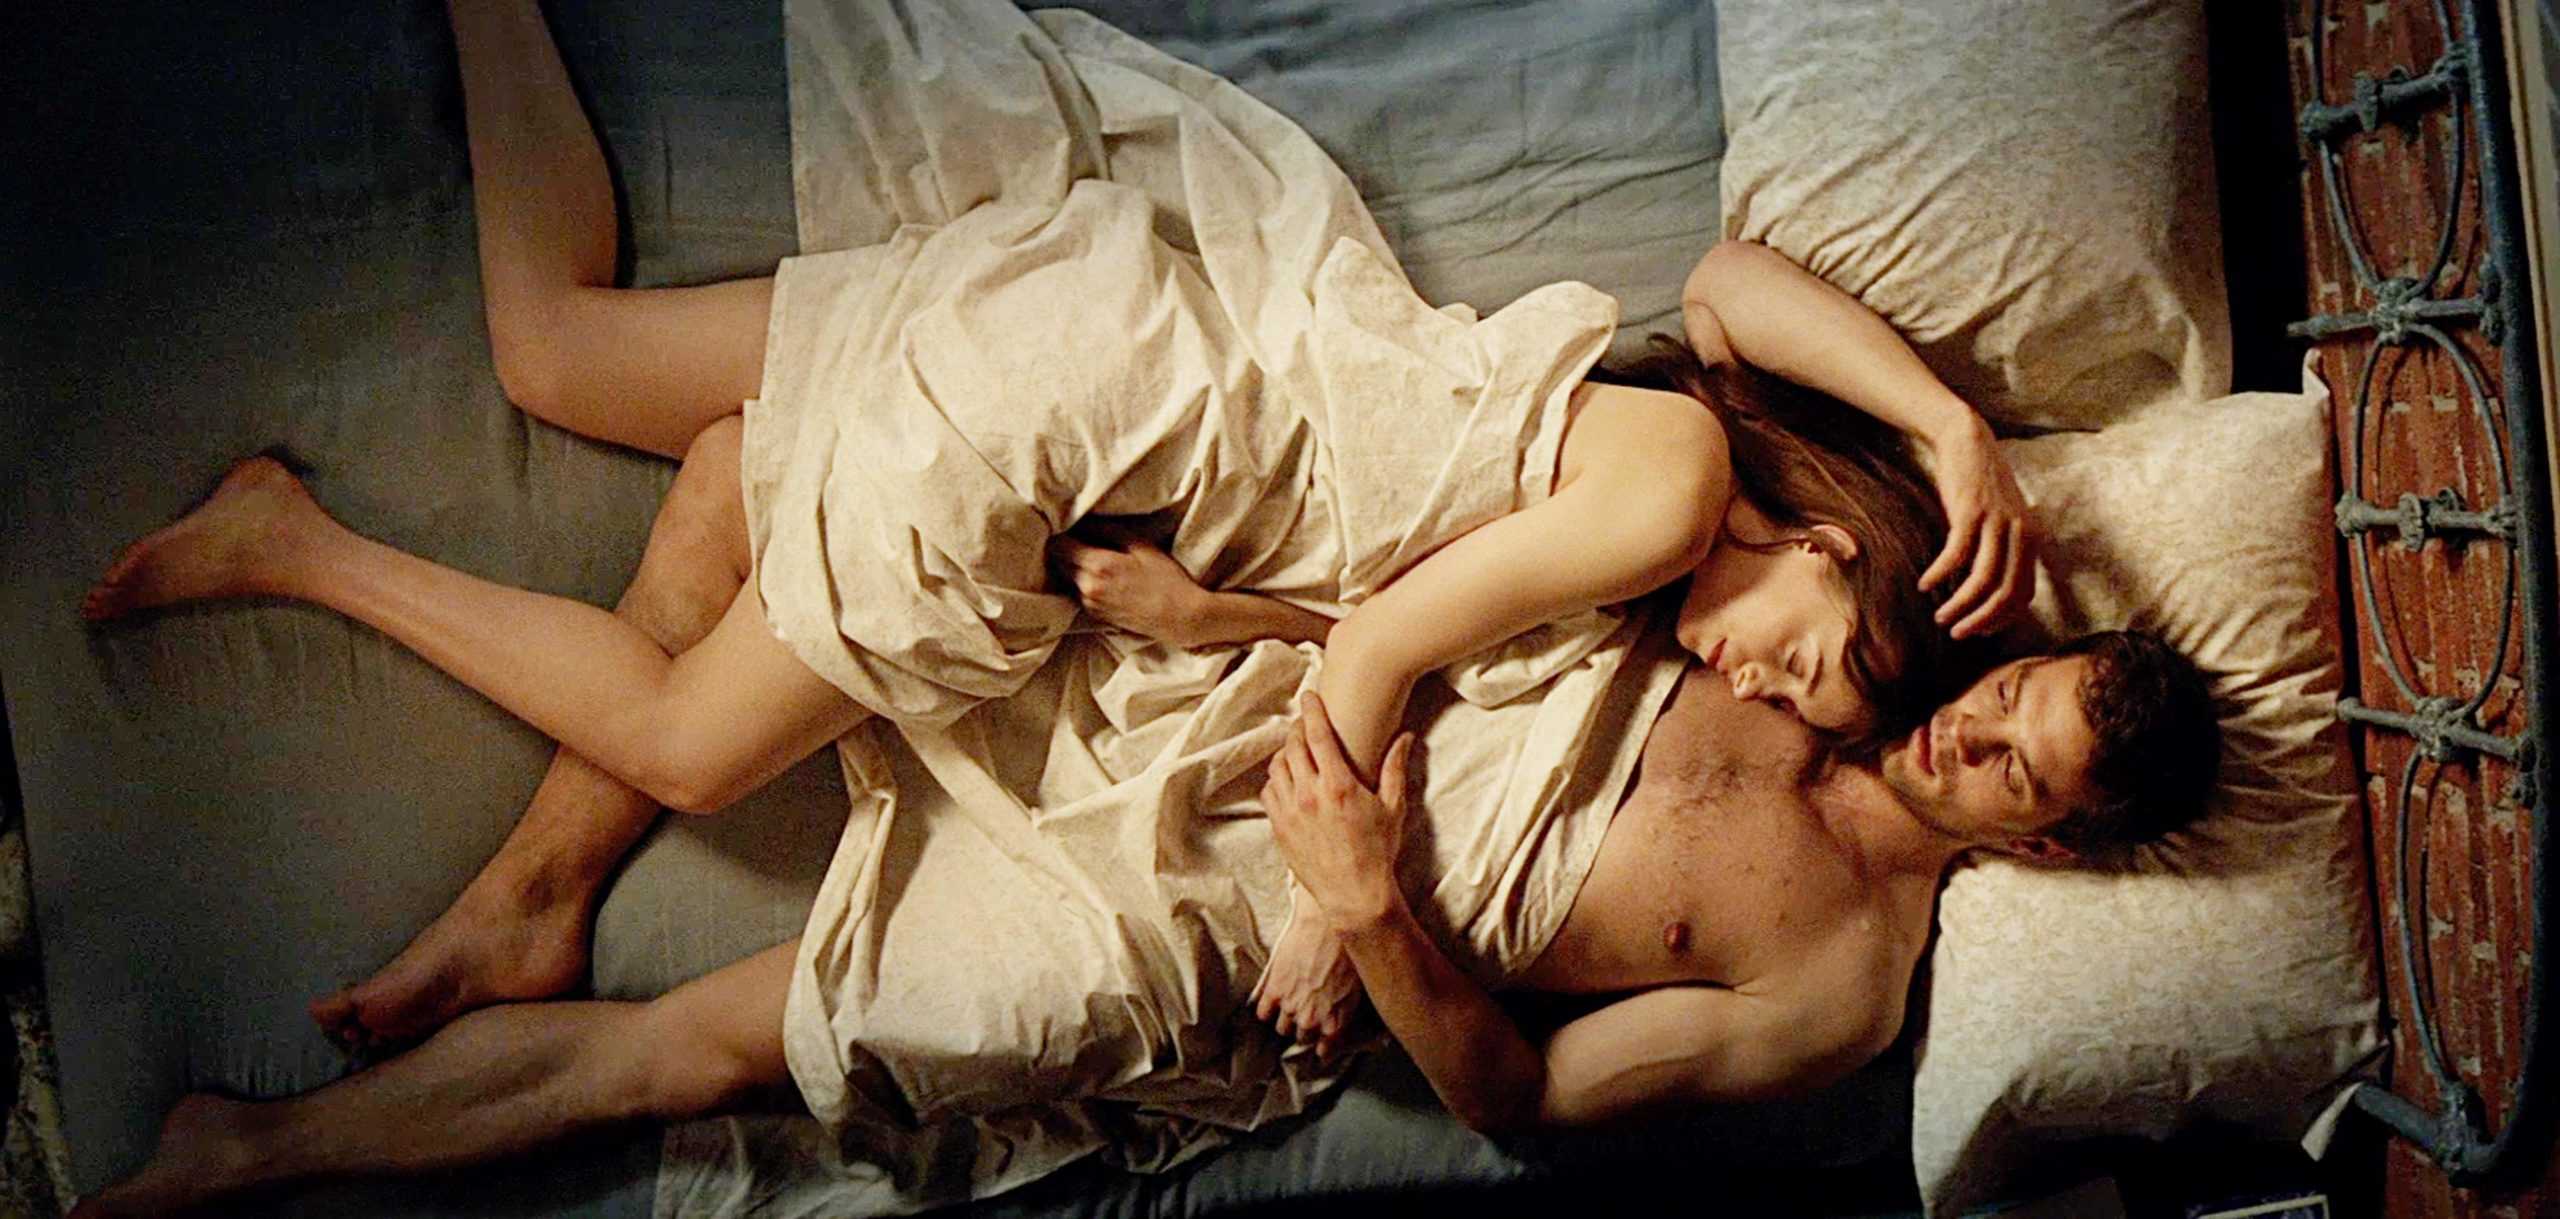 10 najboljih scena seksa gardihan